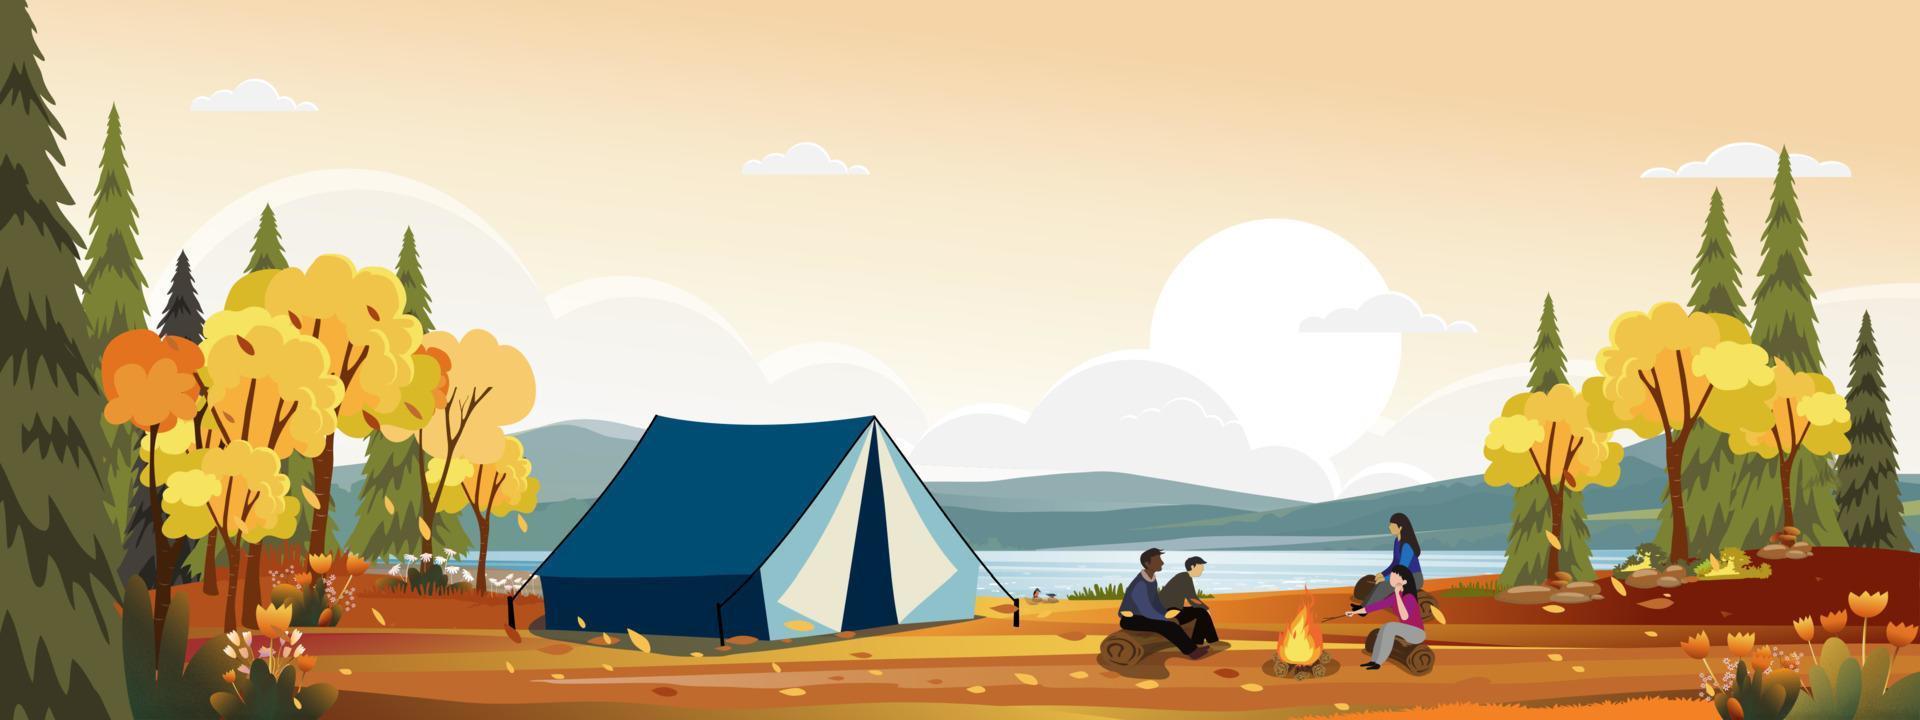 autunno scena con famiglia godendo vacanza campeggio a campagna di il fiume, gente seduta vicino il tenda e fuoco di bivacco avendo divertimento parlando insieme, vettore rurale paesaggio nel autunno foresta con tramonto